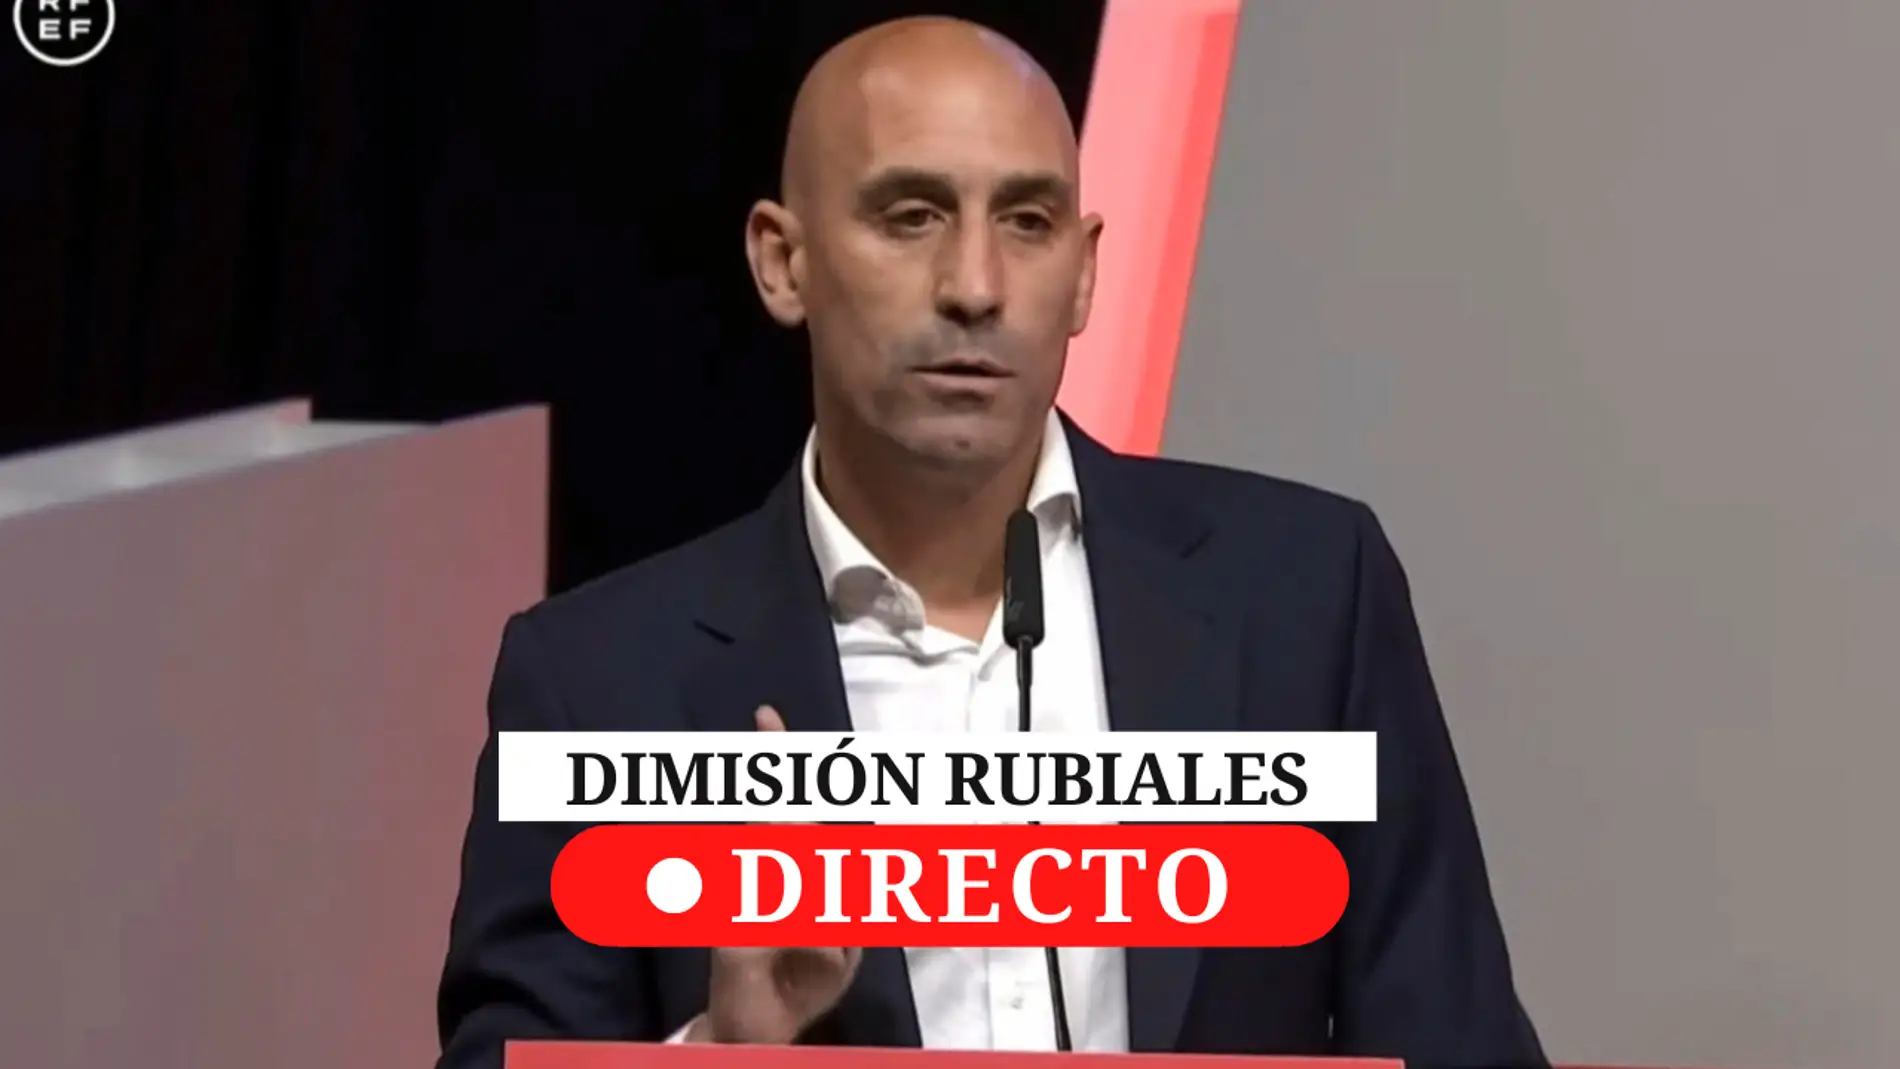 Rubiales no dimite, en directo: última hora y reacciones de la Asamblea de la RFEF